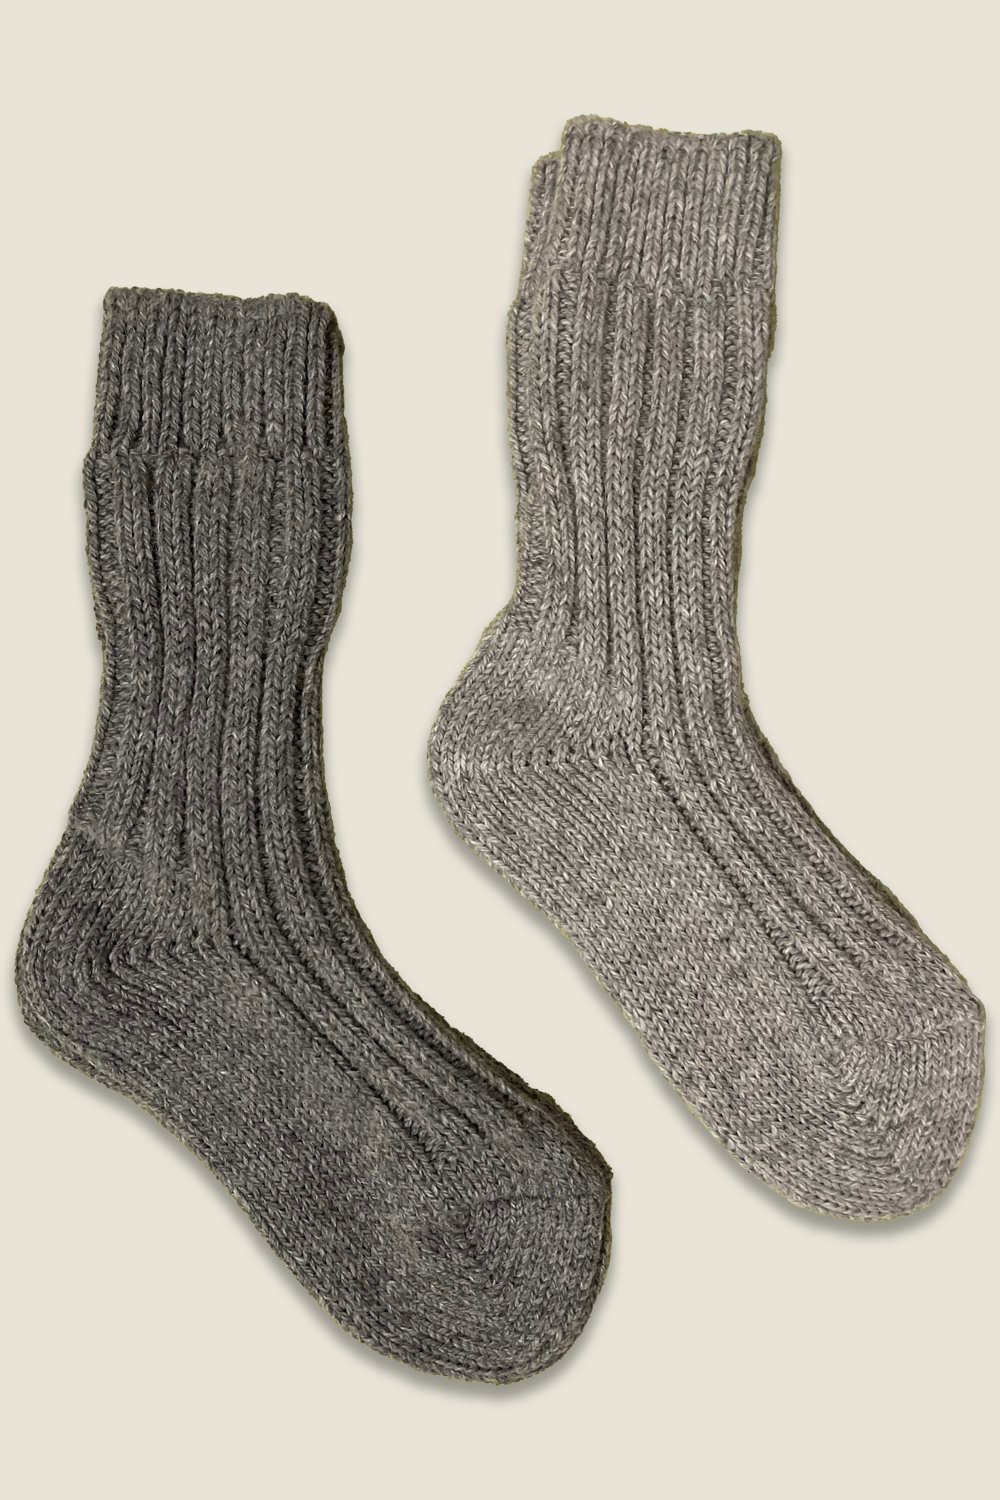 Chaussettes en alpaga - gris et gris foncé - 2 paires